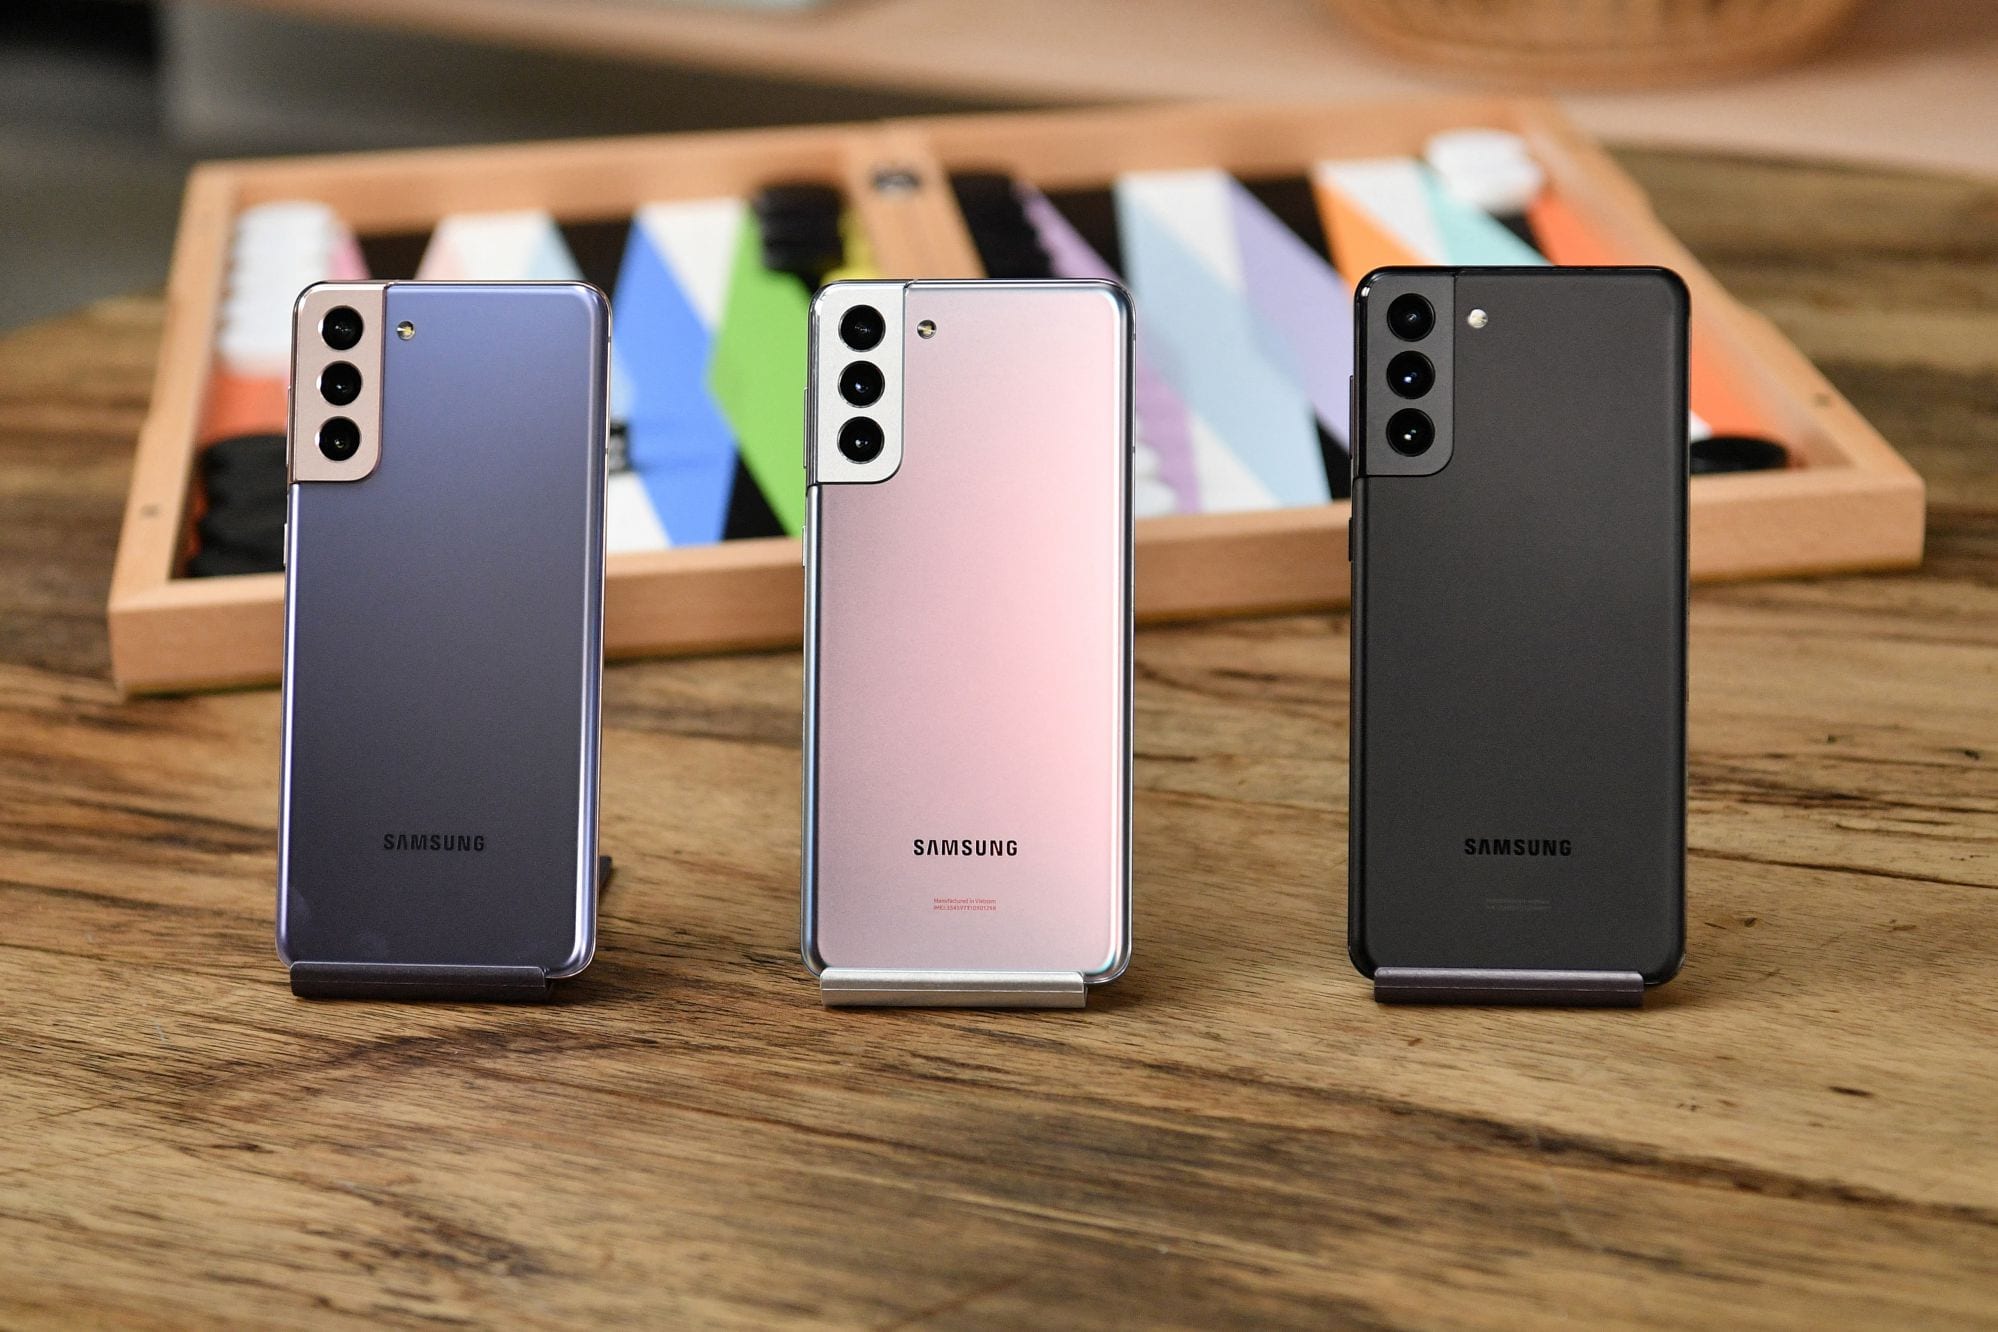 Samsung Galaxy S21 Plus: วิธีเชื่อมต่อหรือออกจากเครือข่าย WiFi